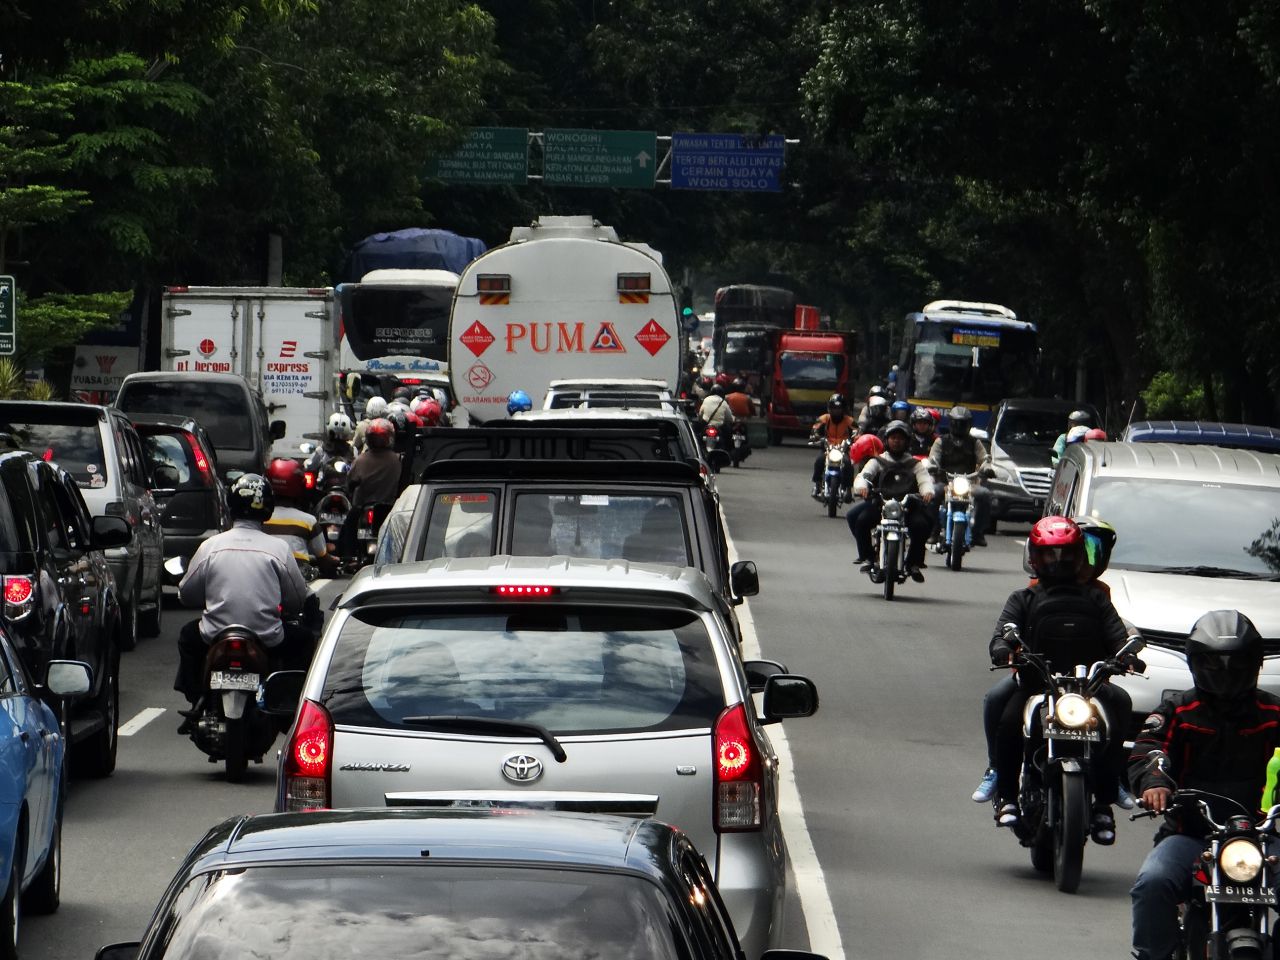 Ранее утро. Трафик на индонезийских дорогах весьма напряженный.  - Малайзия, Индонезия. Часть 3. Джекьякарта. День второй.